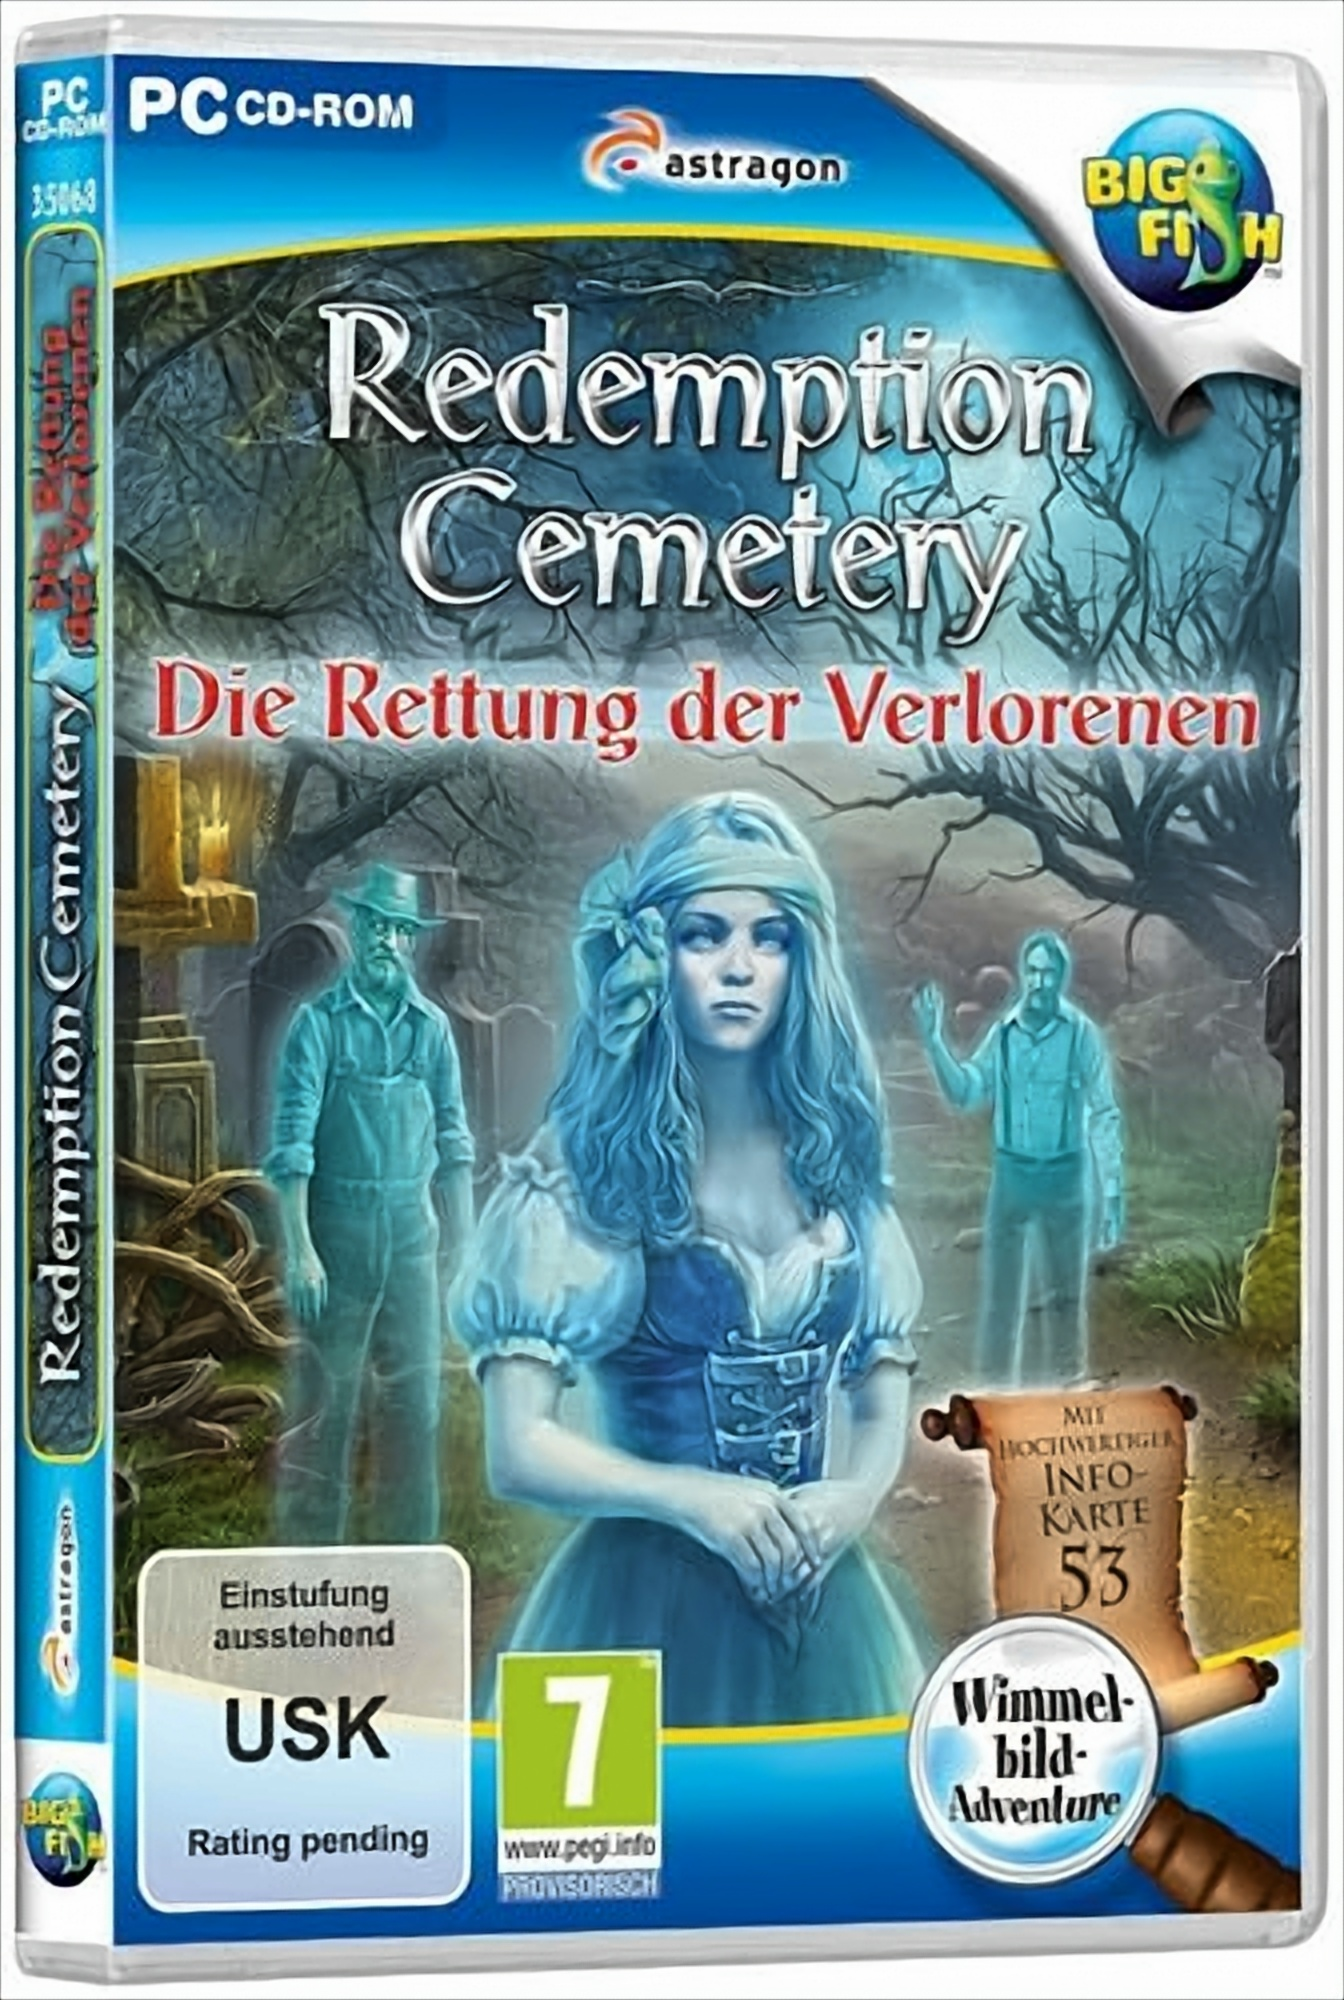 Redemption der Verlorenen Cemetery: Rettung - [PC] Die